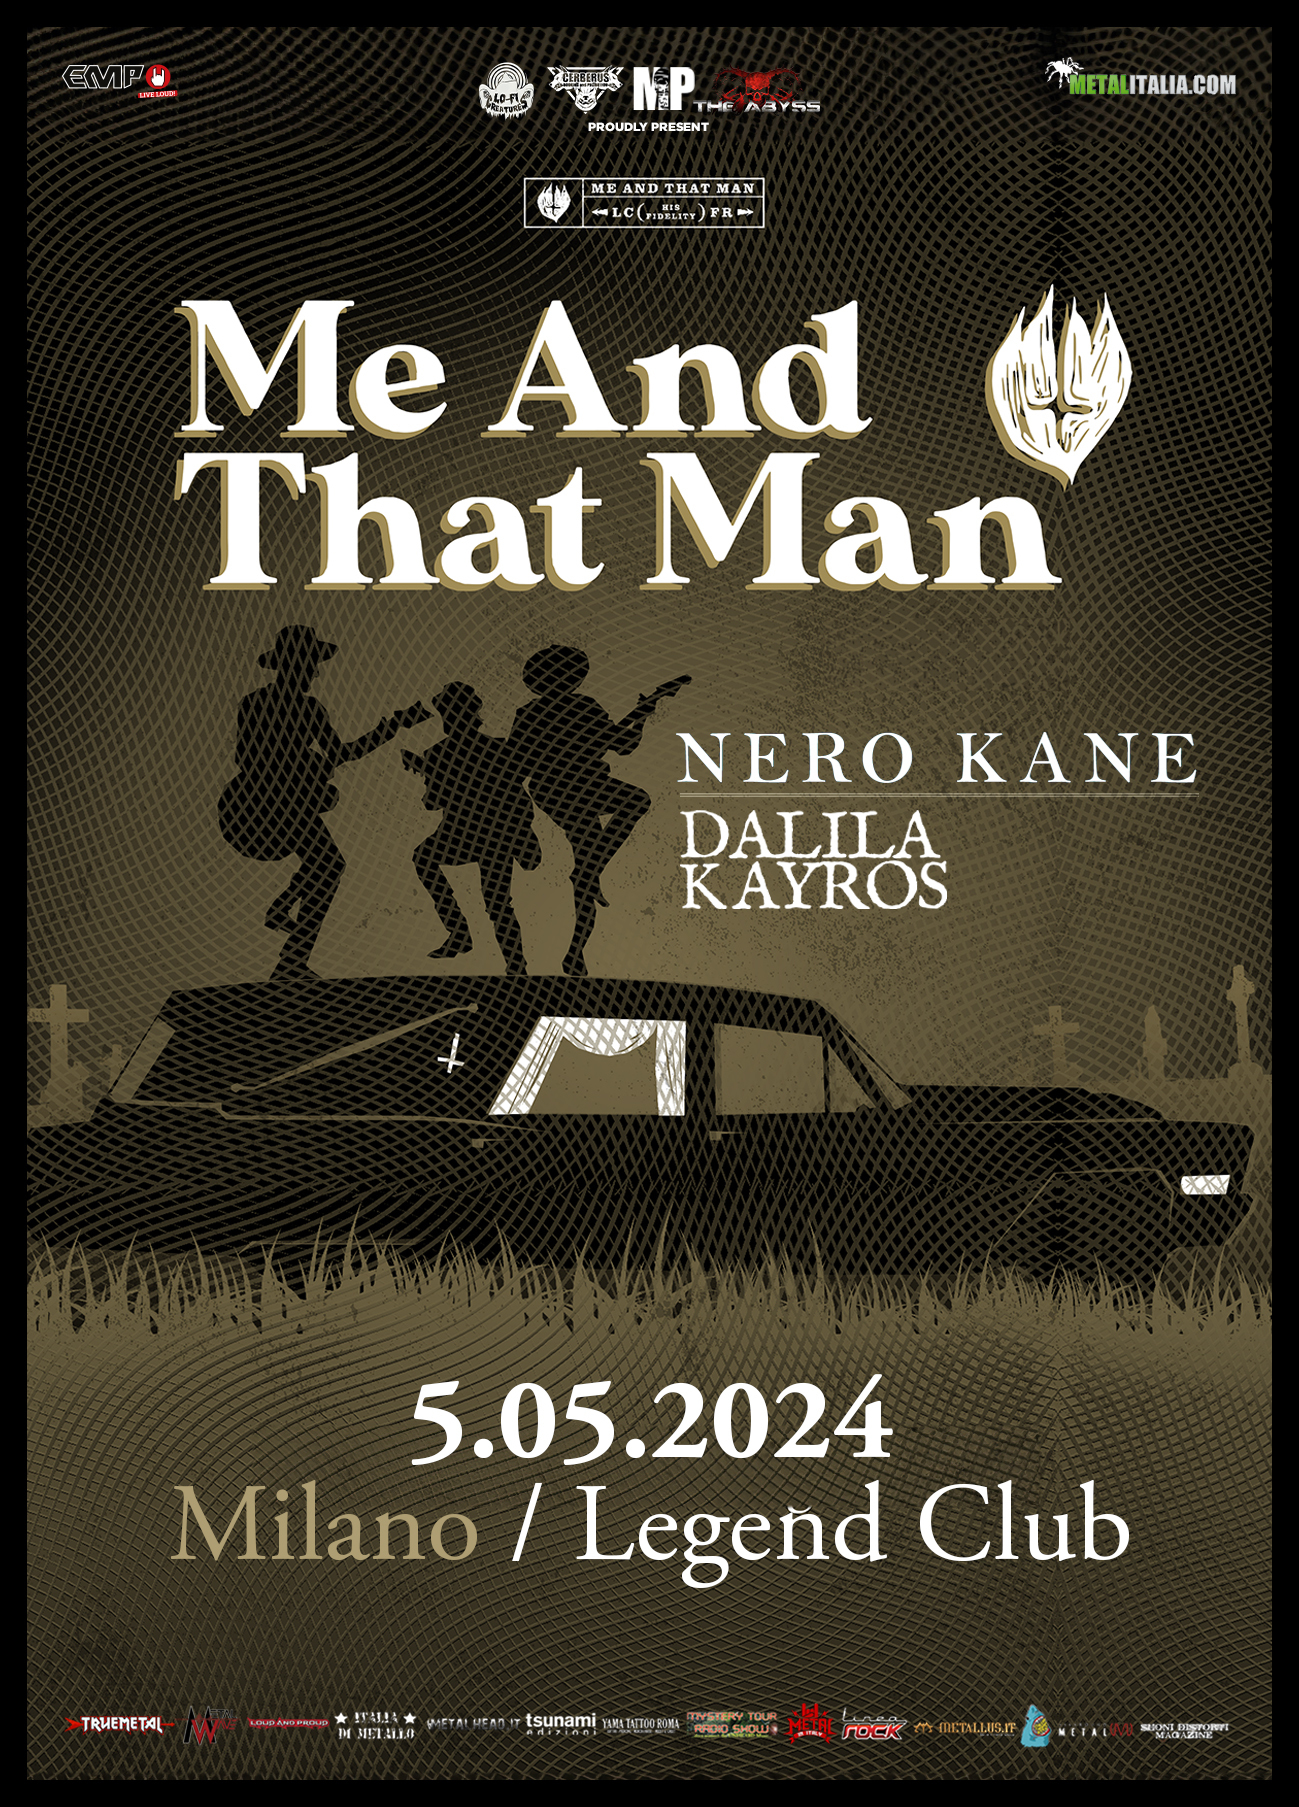 ME AND THAT MAN: gli orari della data di Milano